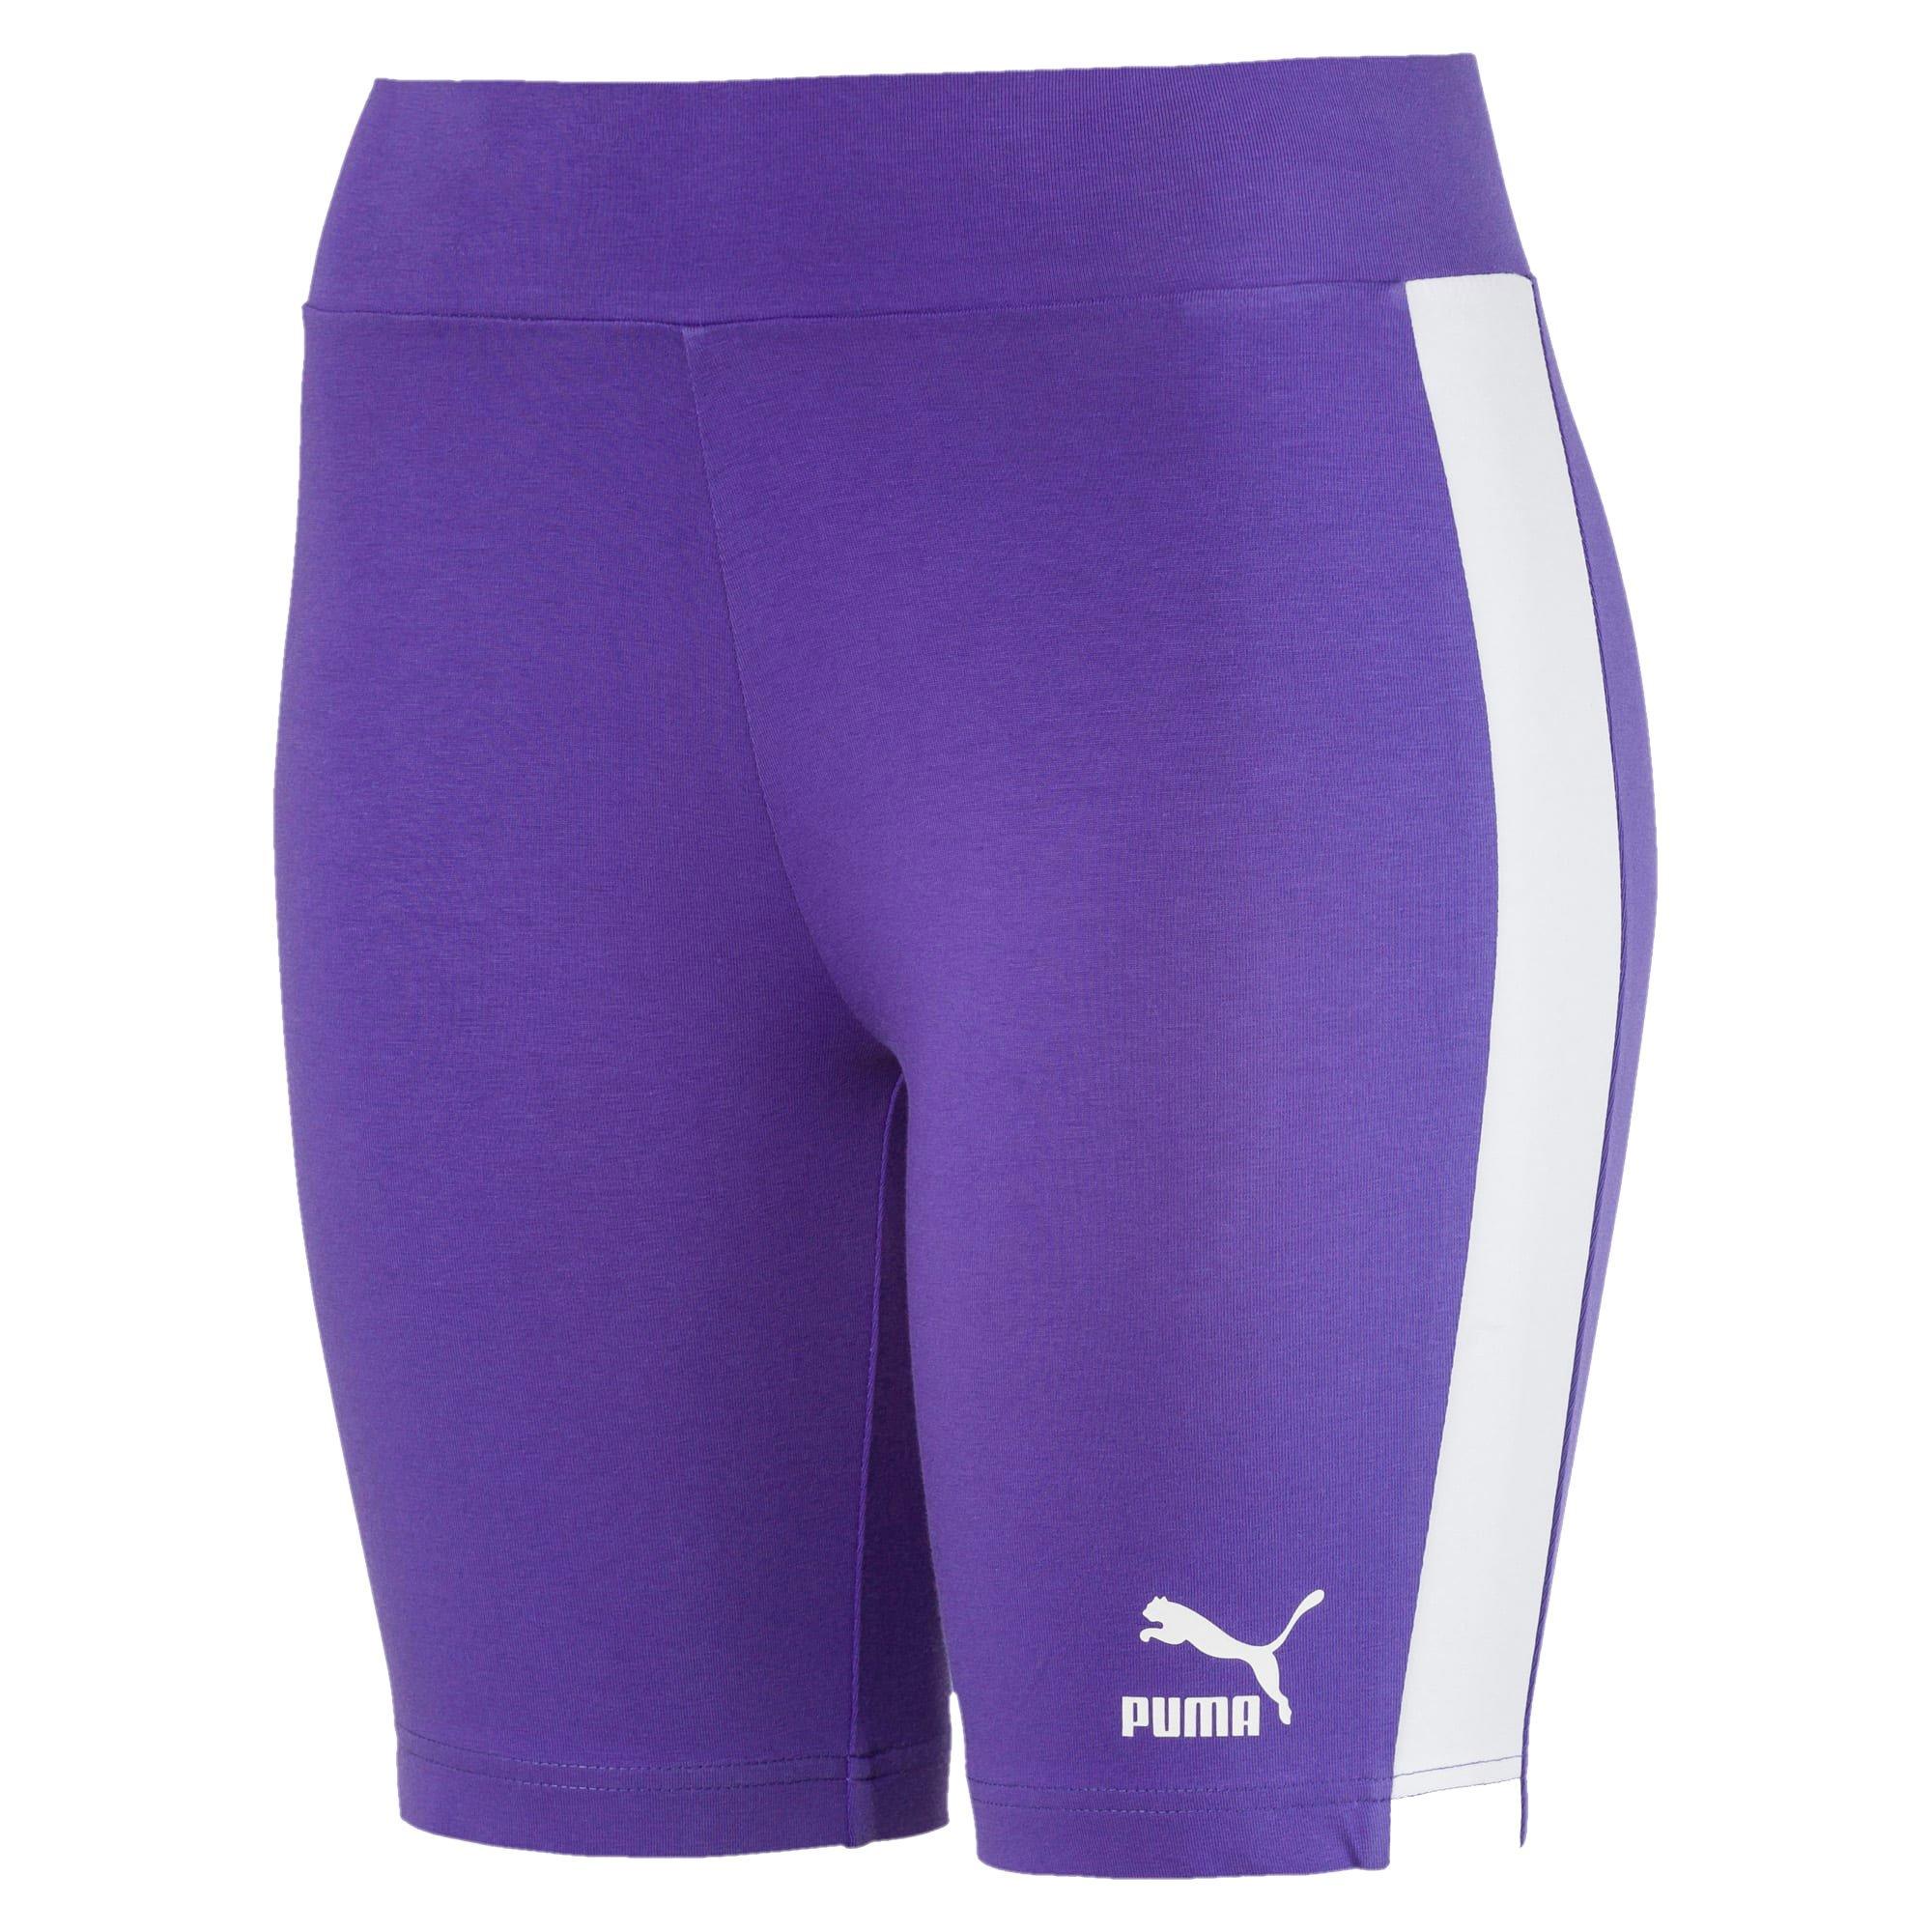 puma cycle shorts